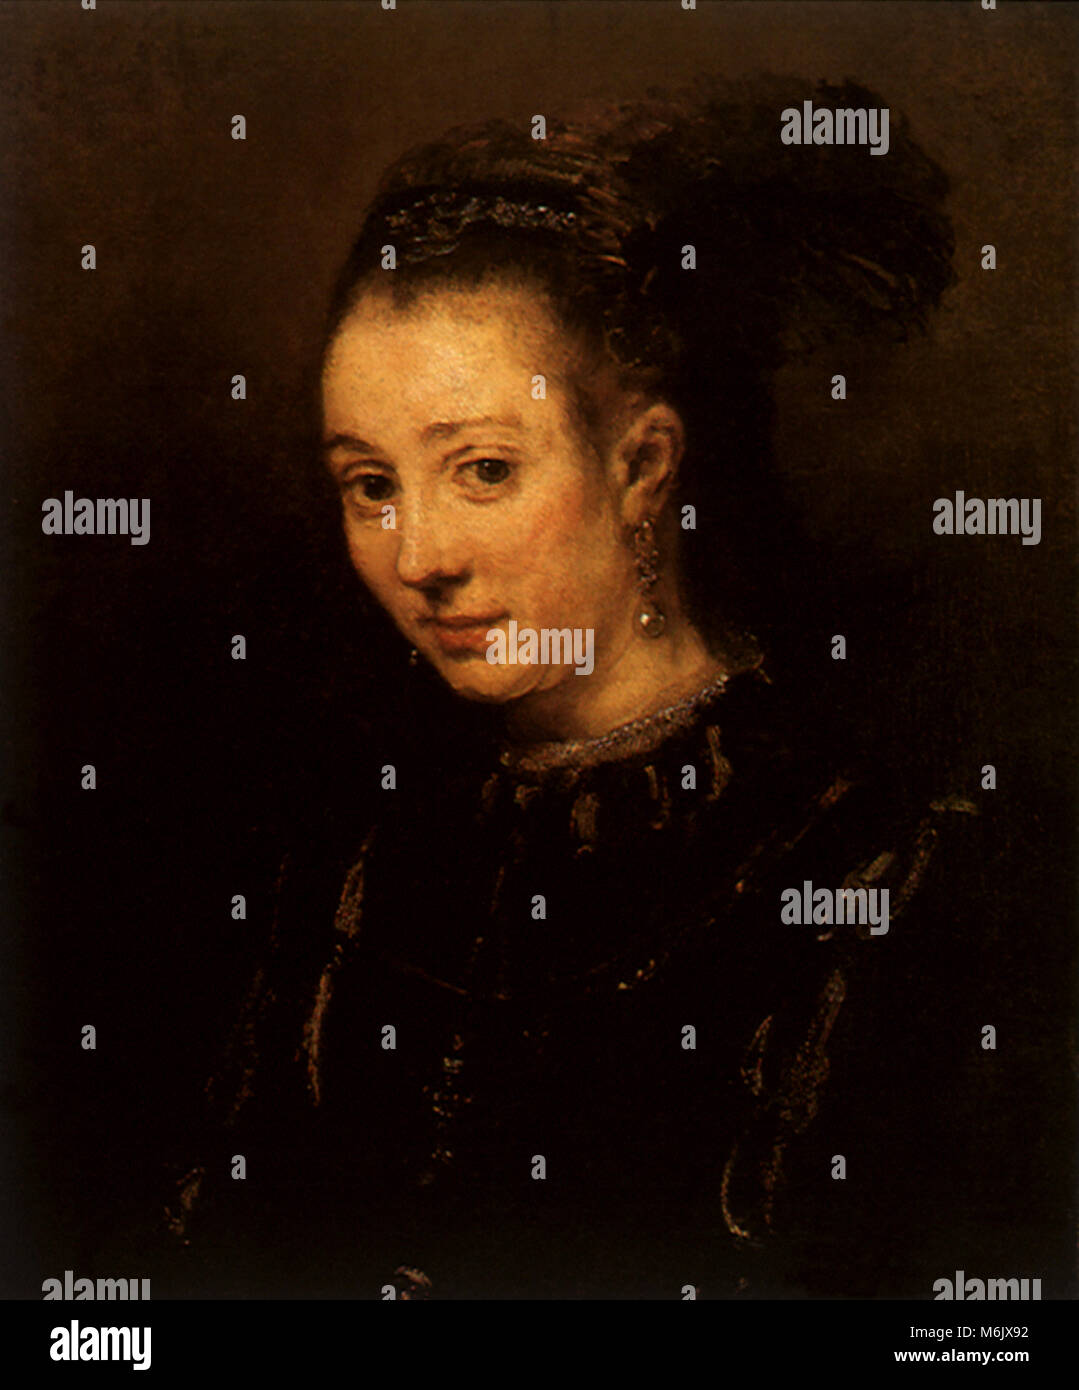 A Young Woman, Rembrandt, Harmensz van Rijn, 1665. Stock Photo